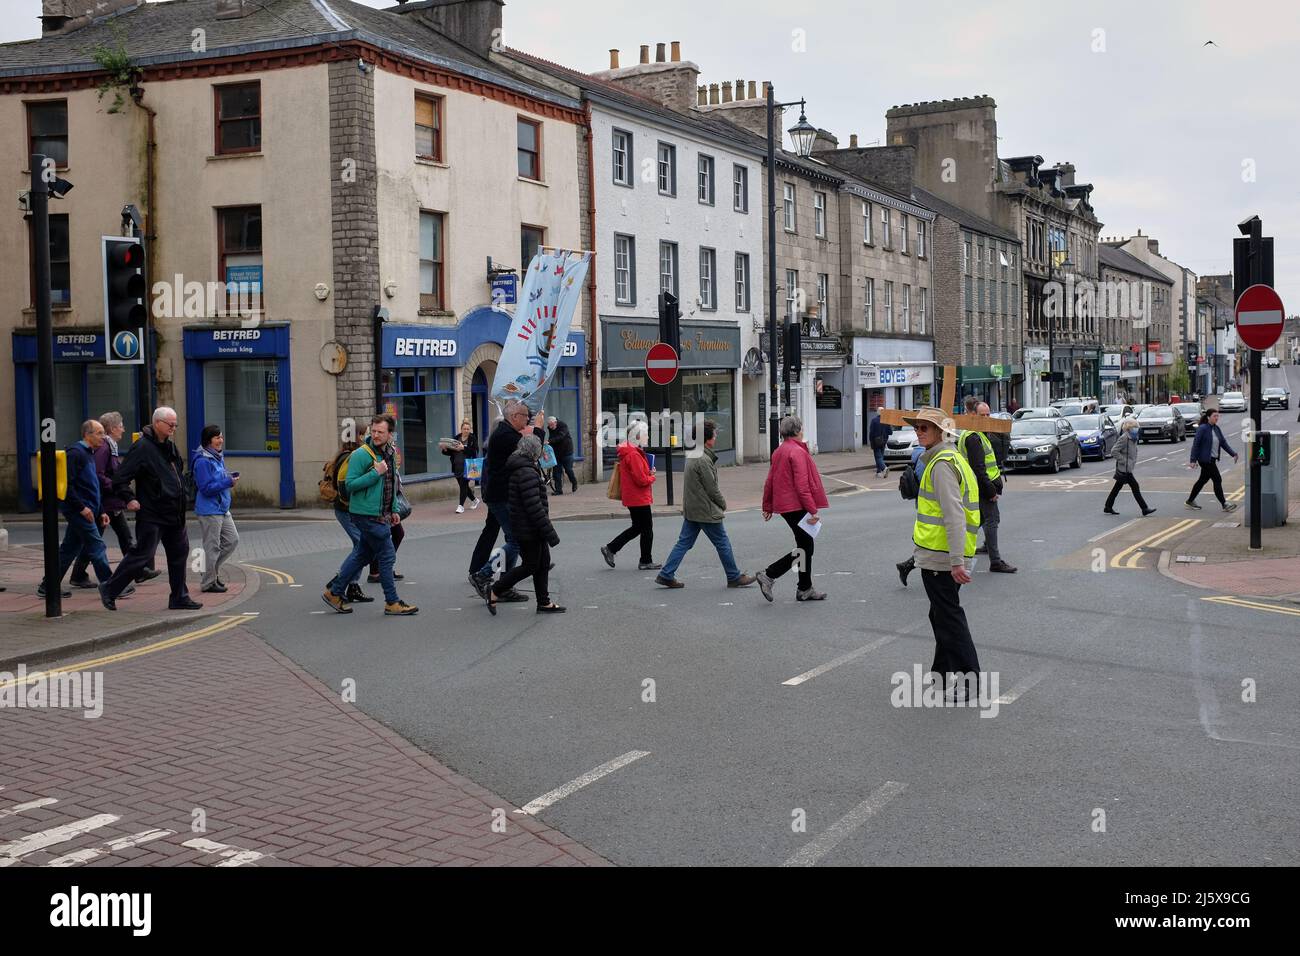 Osterprozession mit einem Transparent, das an der Ampel in Kendal, Cumbria, Großbritannien, die Straße überquert, wobei ein Mann in einer Hi-viz-Jacke anschaut Stockfoto